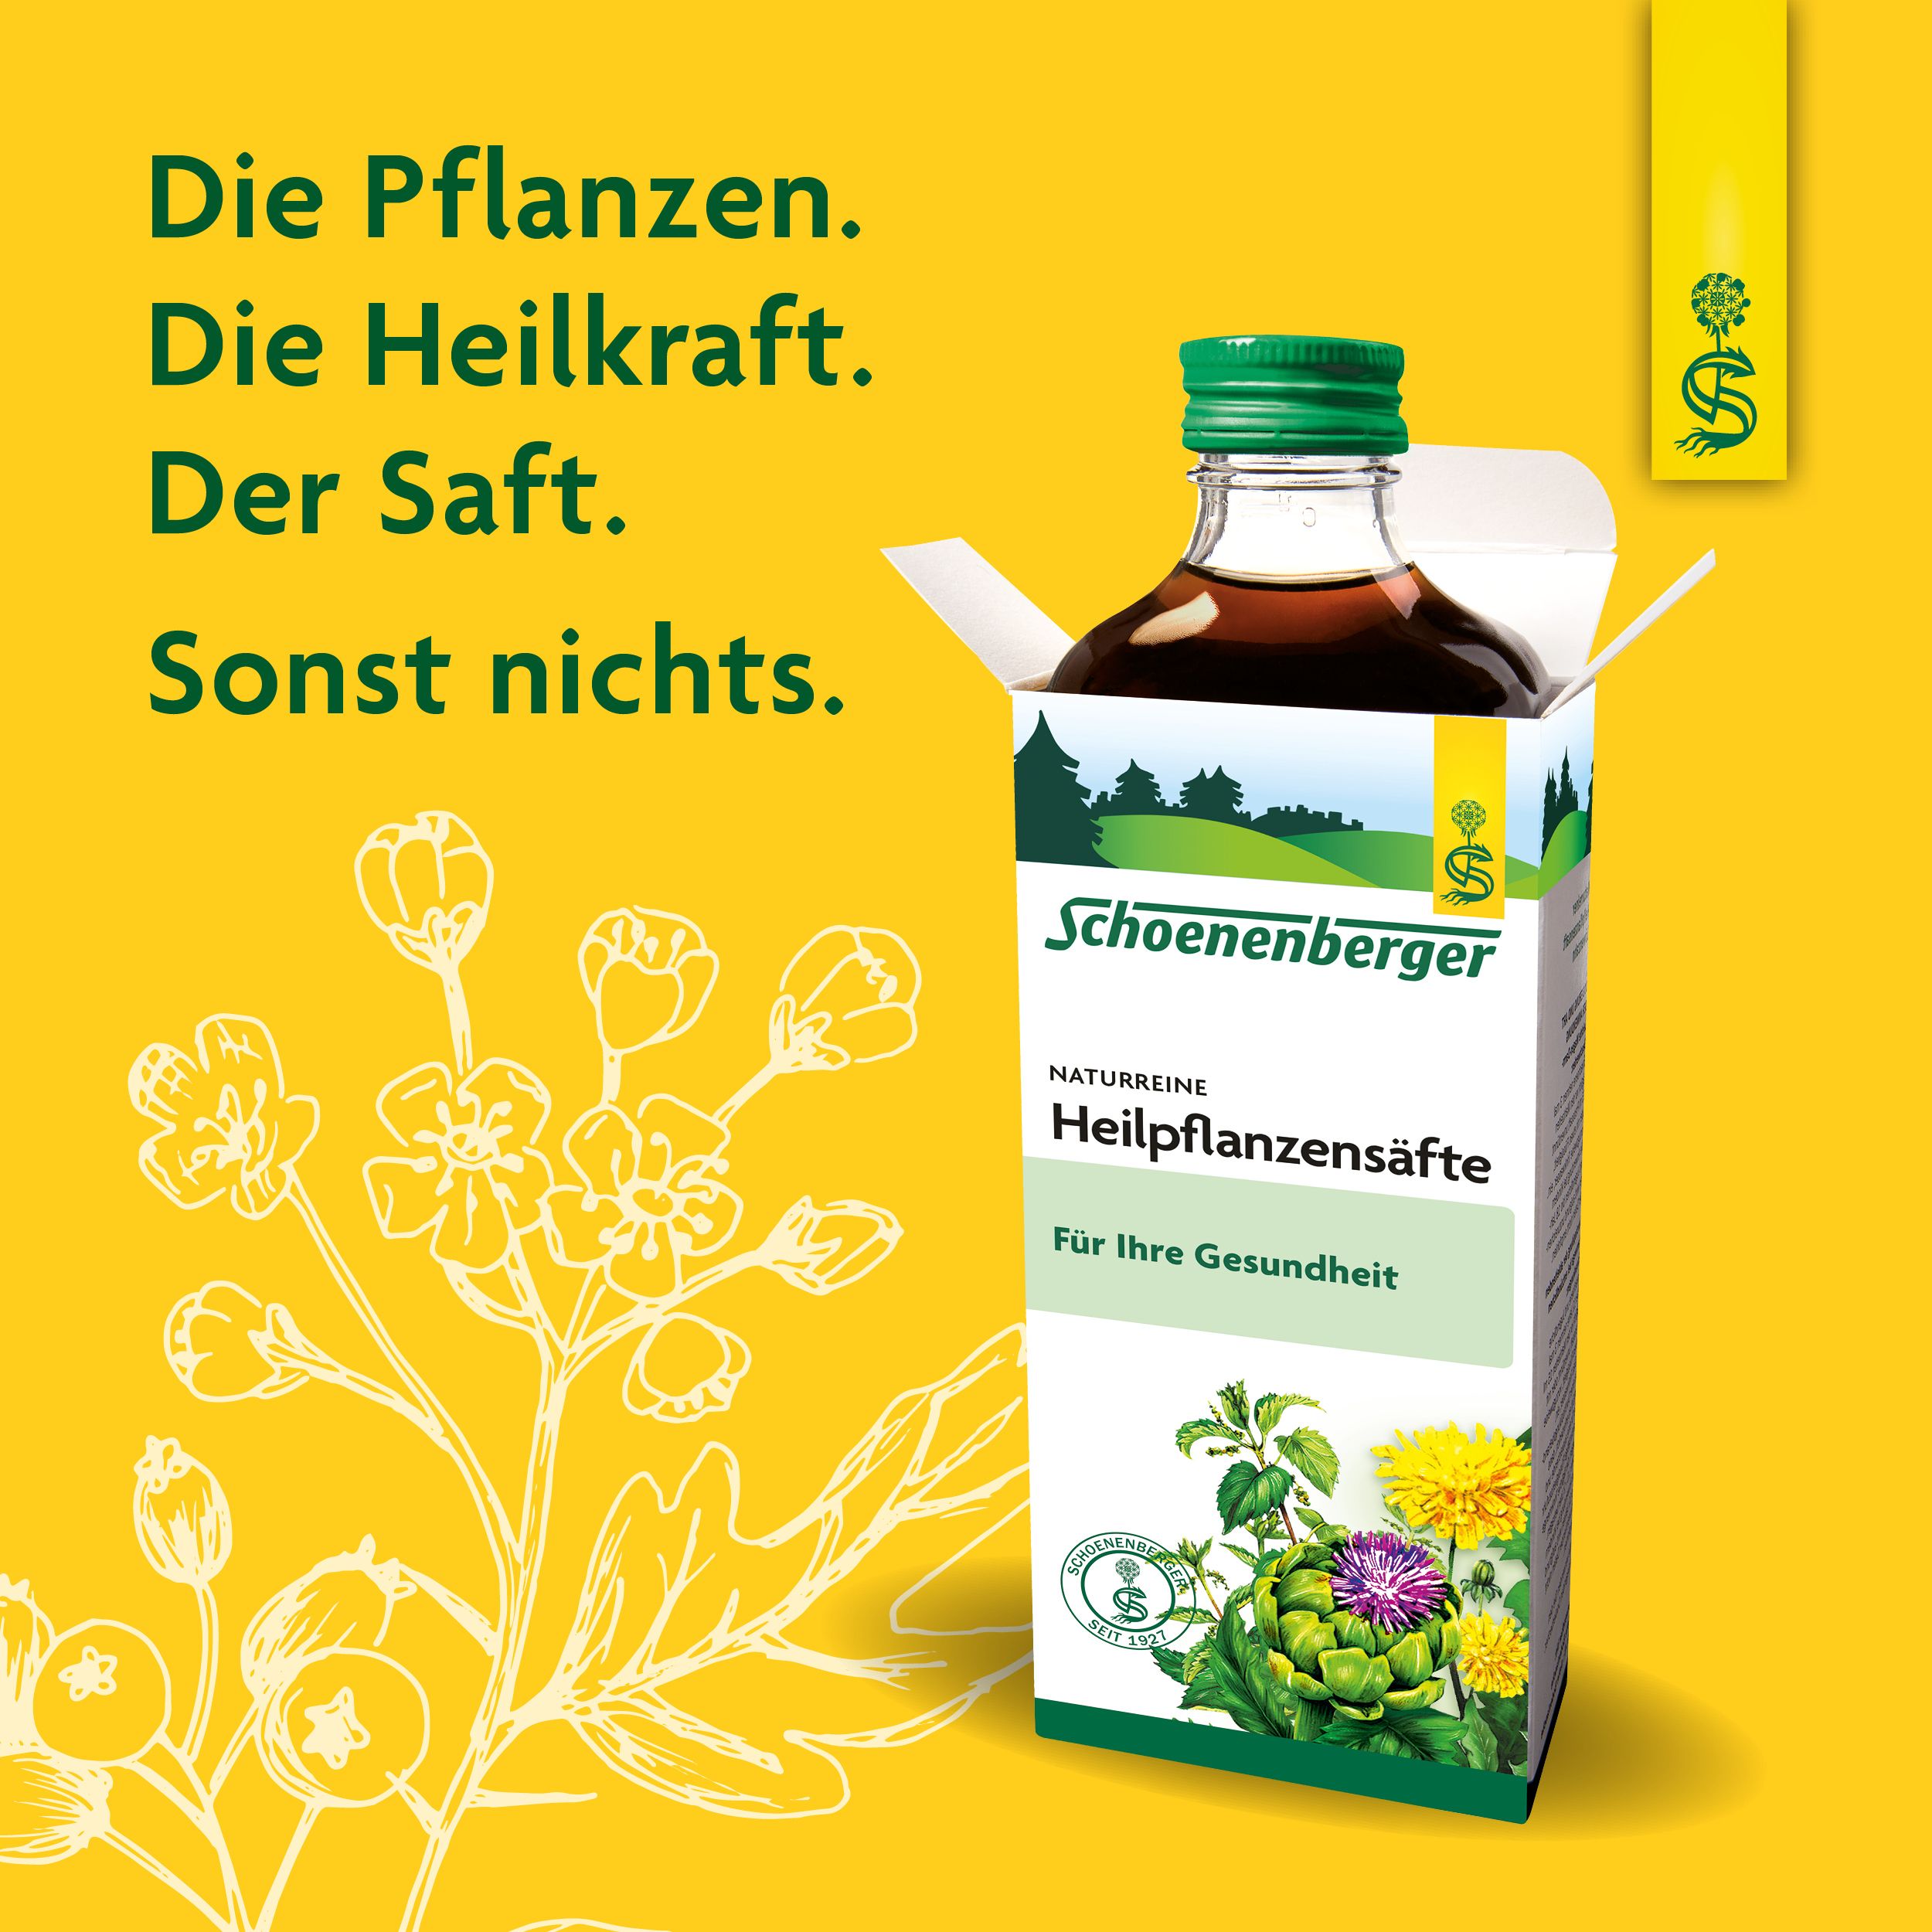 Schoenenberger® naturreiner Heilpflanzensaft Schwarzrettich